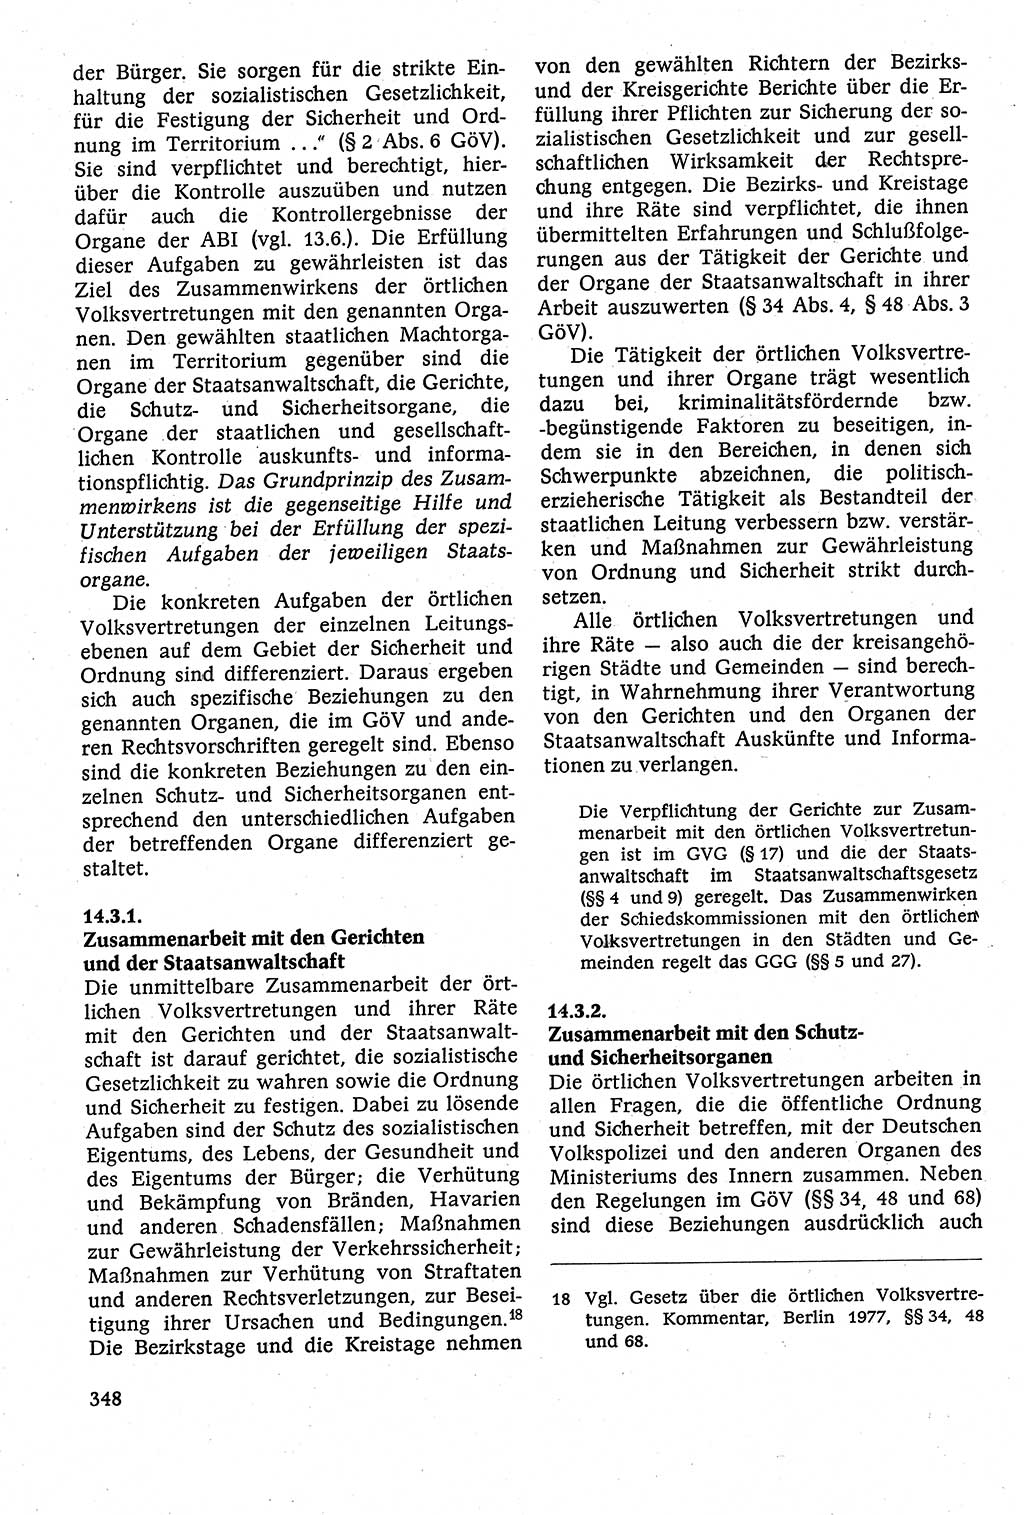 Staatsrecht der DDR [Deutsche Demokratische Republik (DDR)], Lehrbuch 1984, Seite 348 (St.-R. DDR Lb. 1984, S. 348)